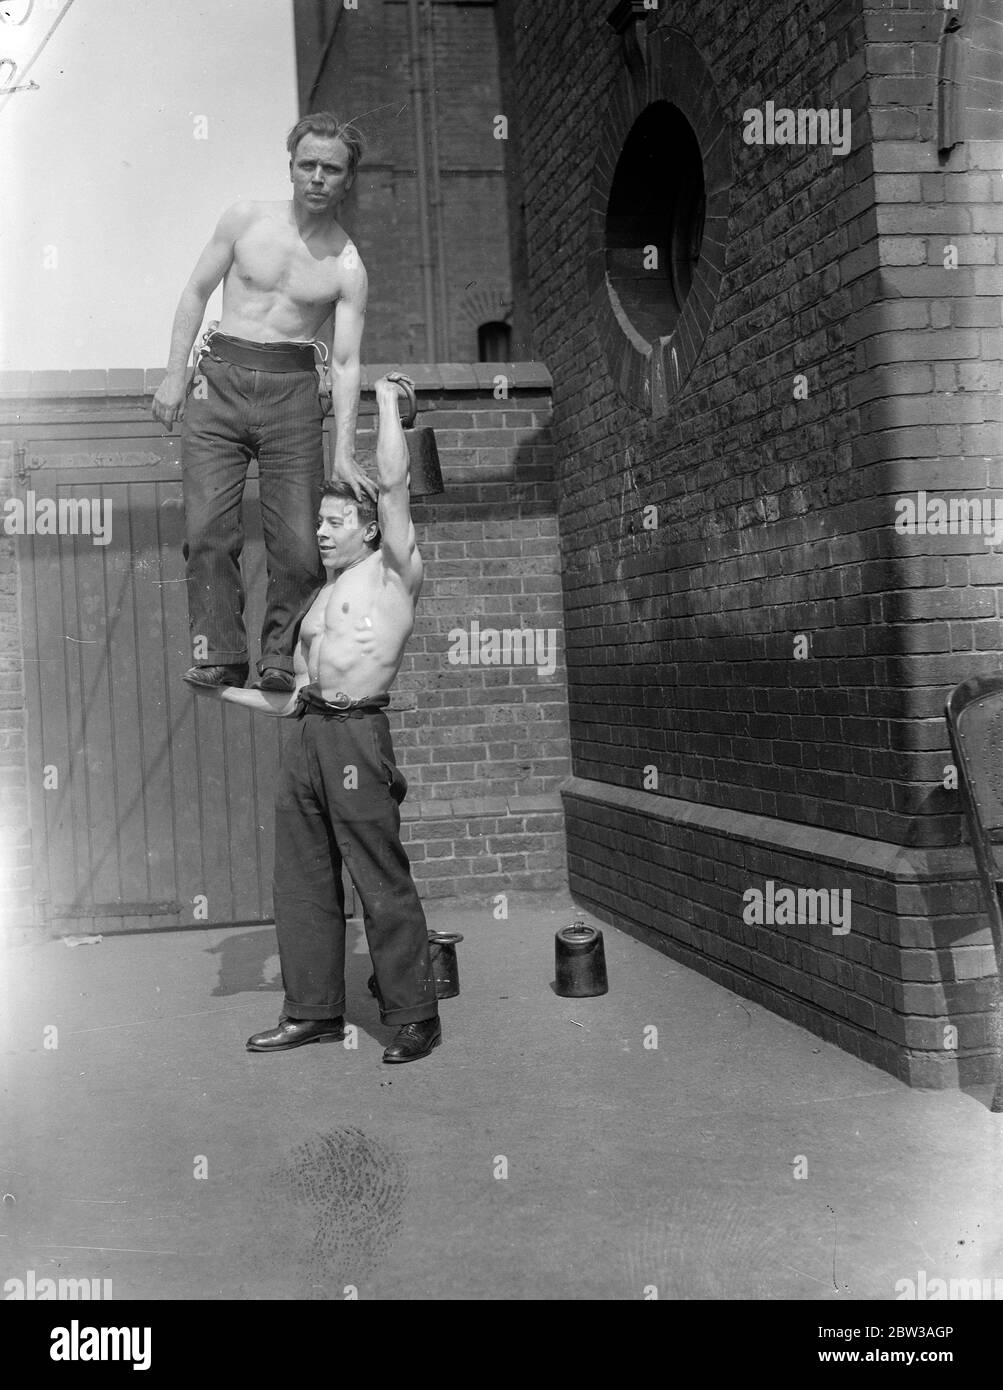 Cirque acrobat hommes forts pratiquant une routine dans une cour en brique . Un homme se tient équilibré sur l'avant-bras d'un autre Banque D'Images